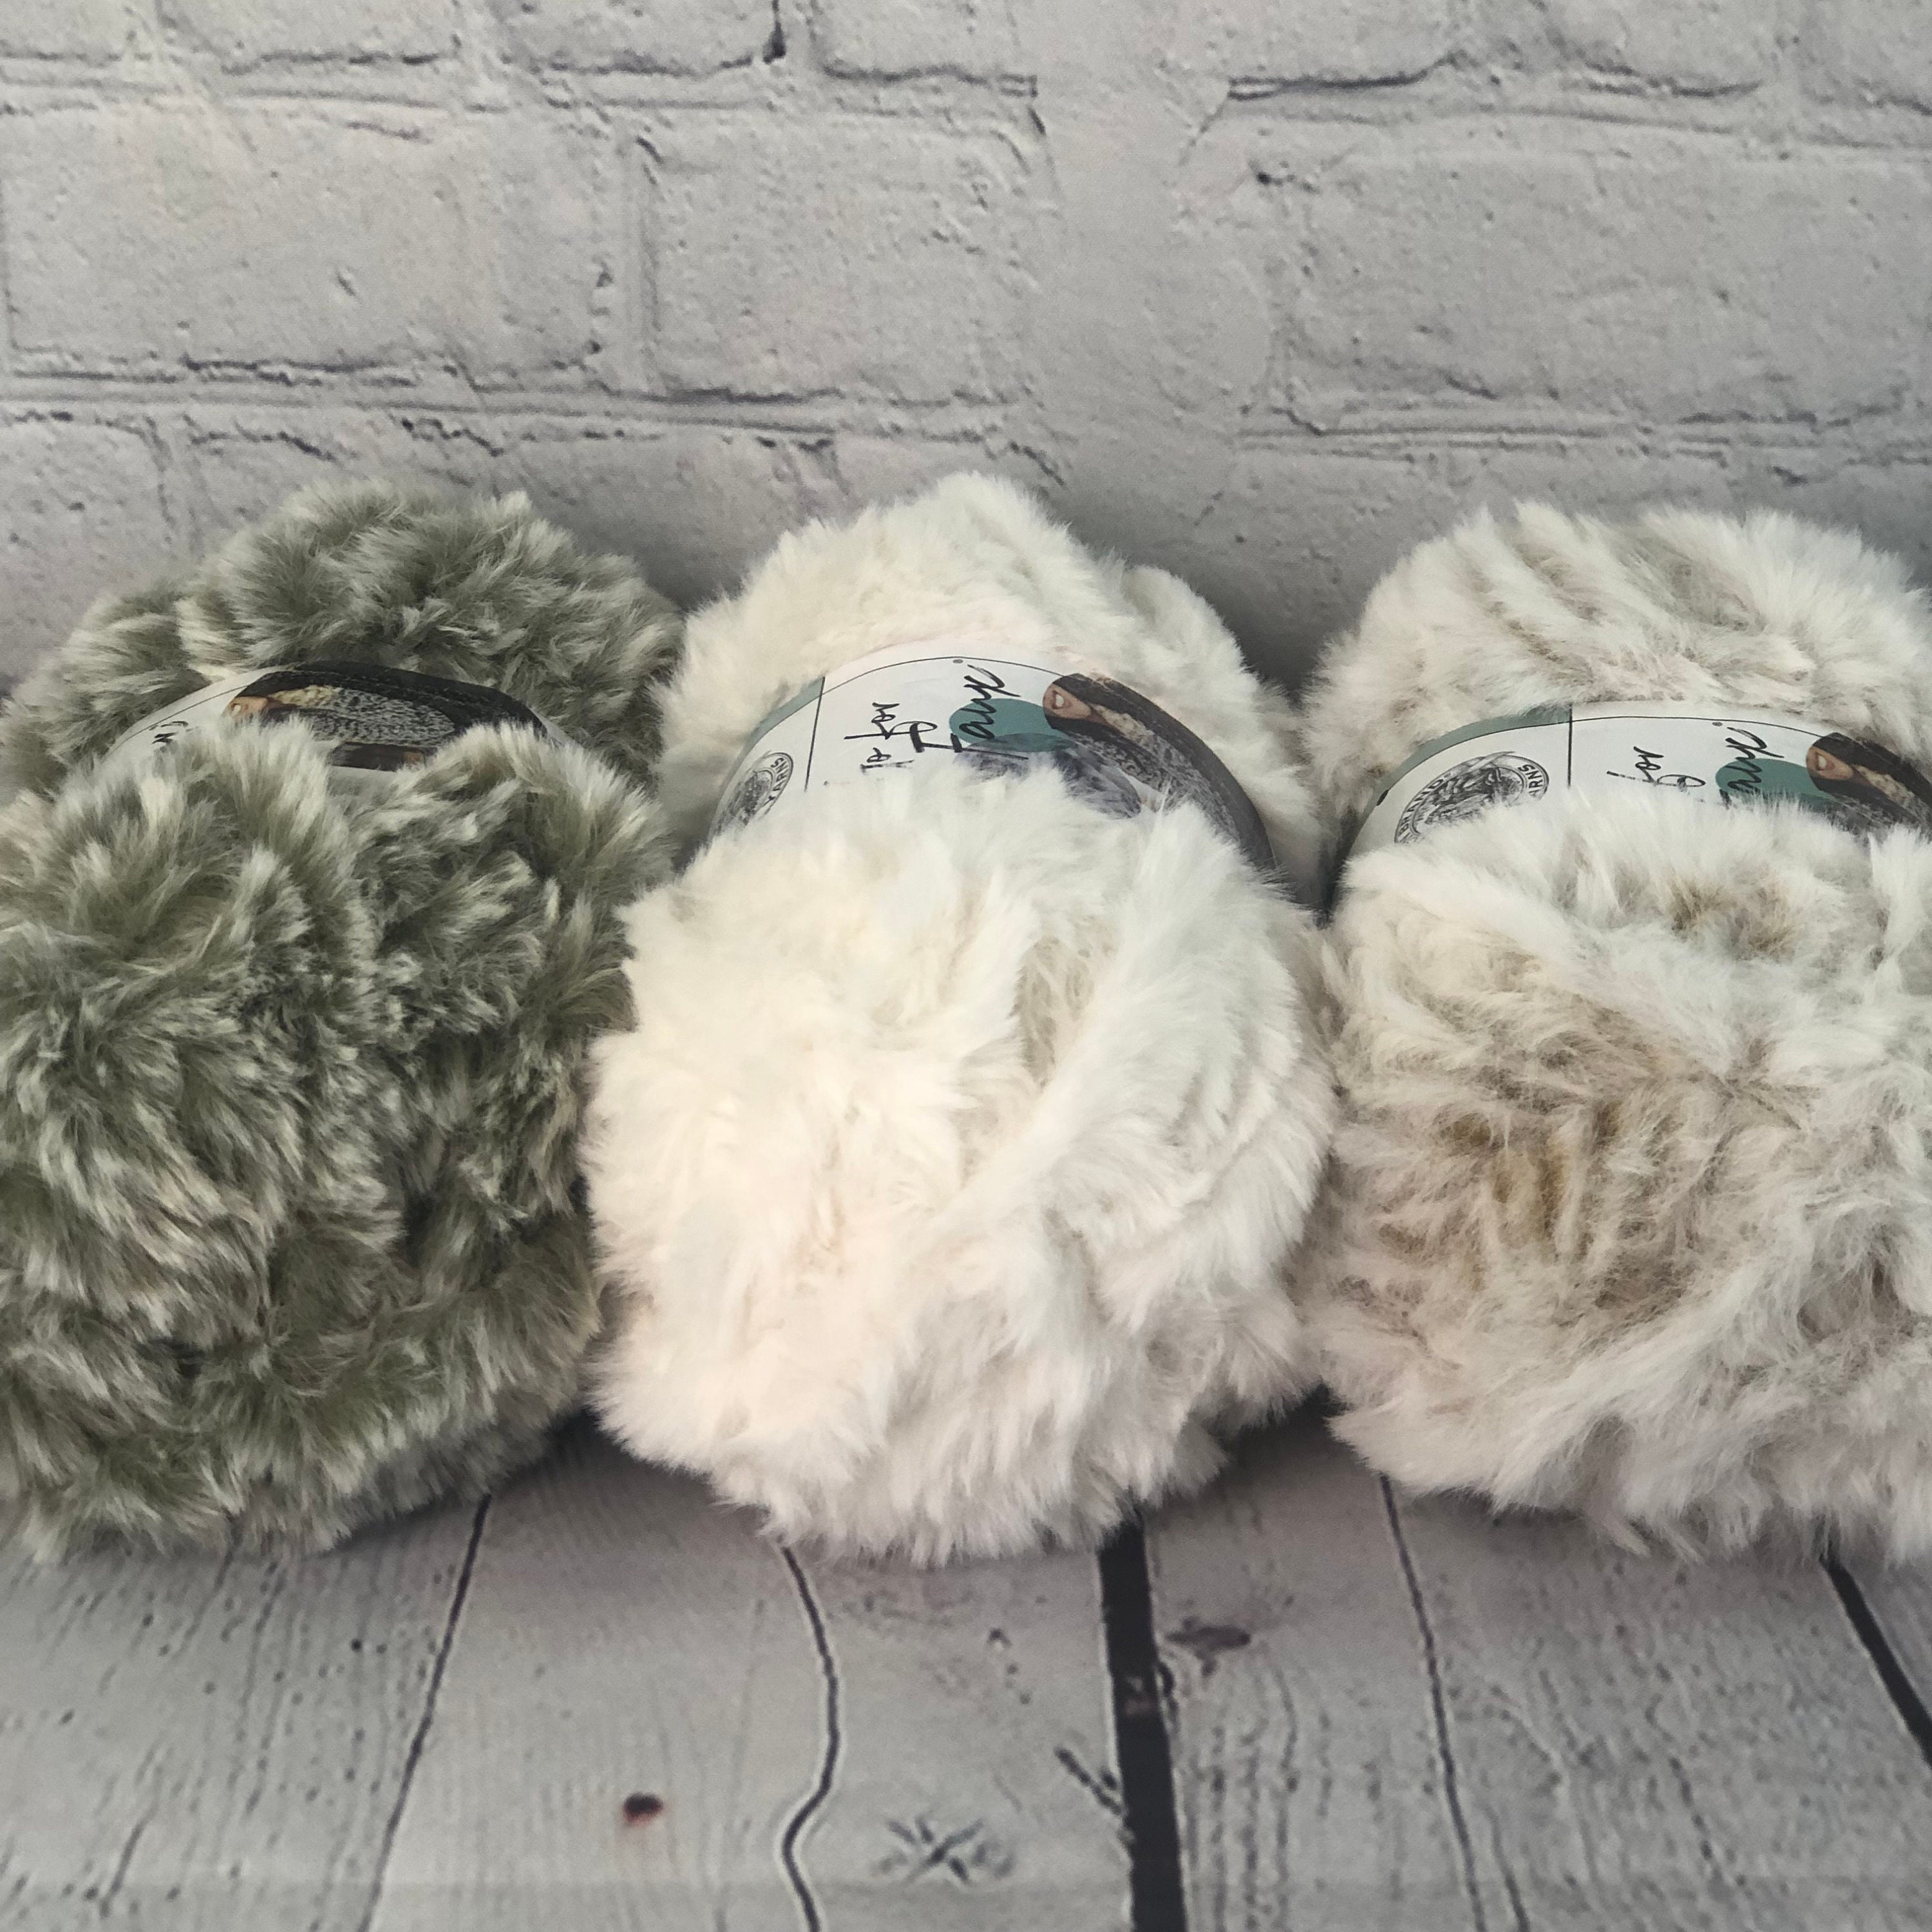 EXCEART Super Soft Fur Yarn Chunky Fluffy Faux Fur Eyelash Yarn for Crochet  Knit 1Roll Brown